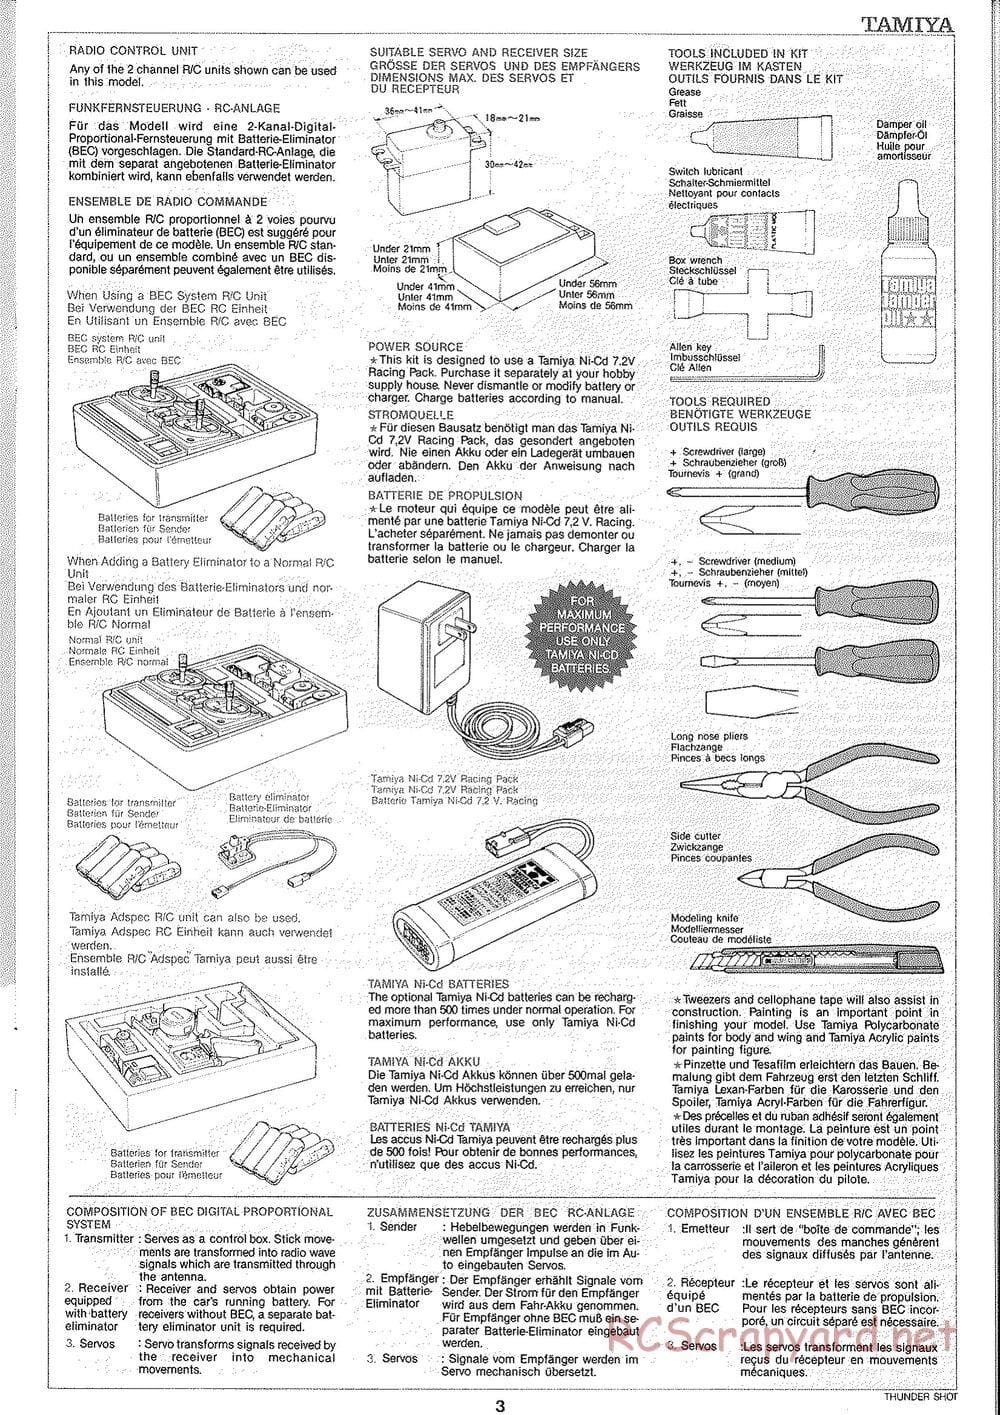 Tamiya - Thunder Shot - TS1 Chassis - Manual - Page 4